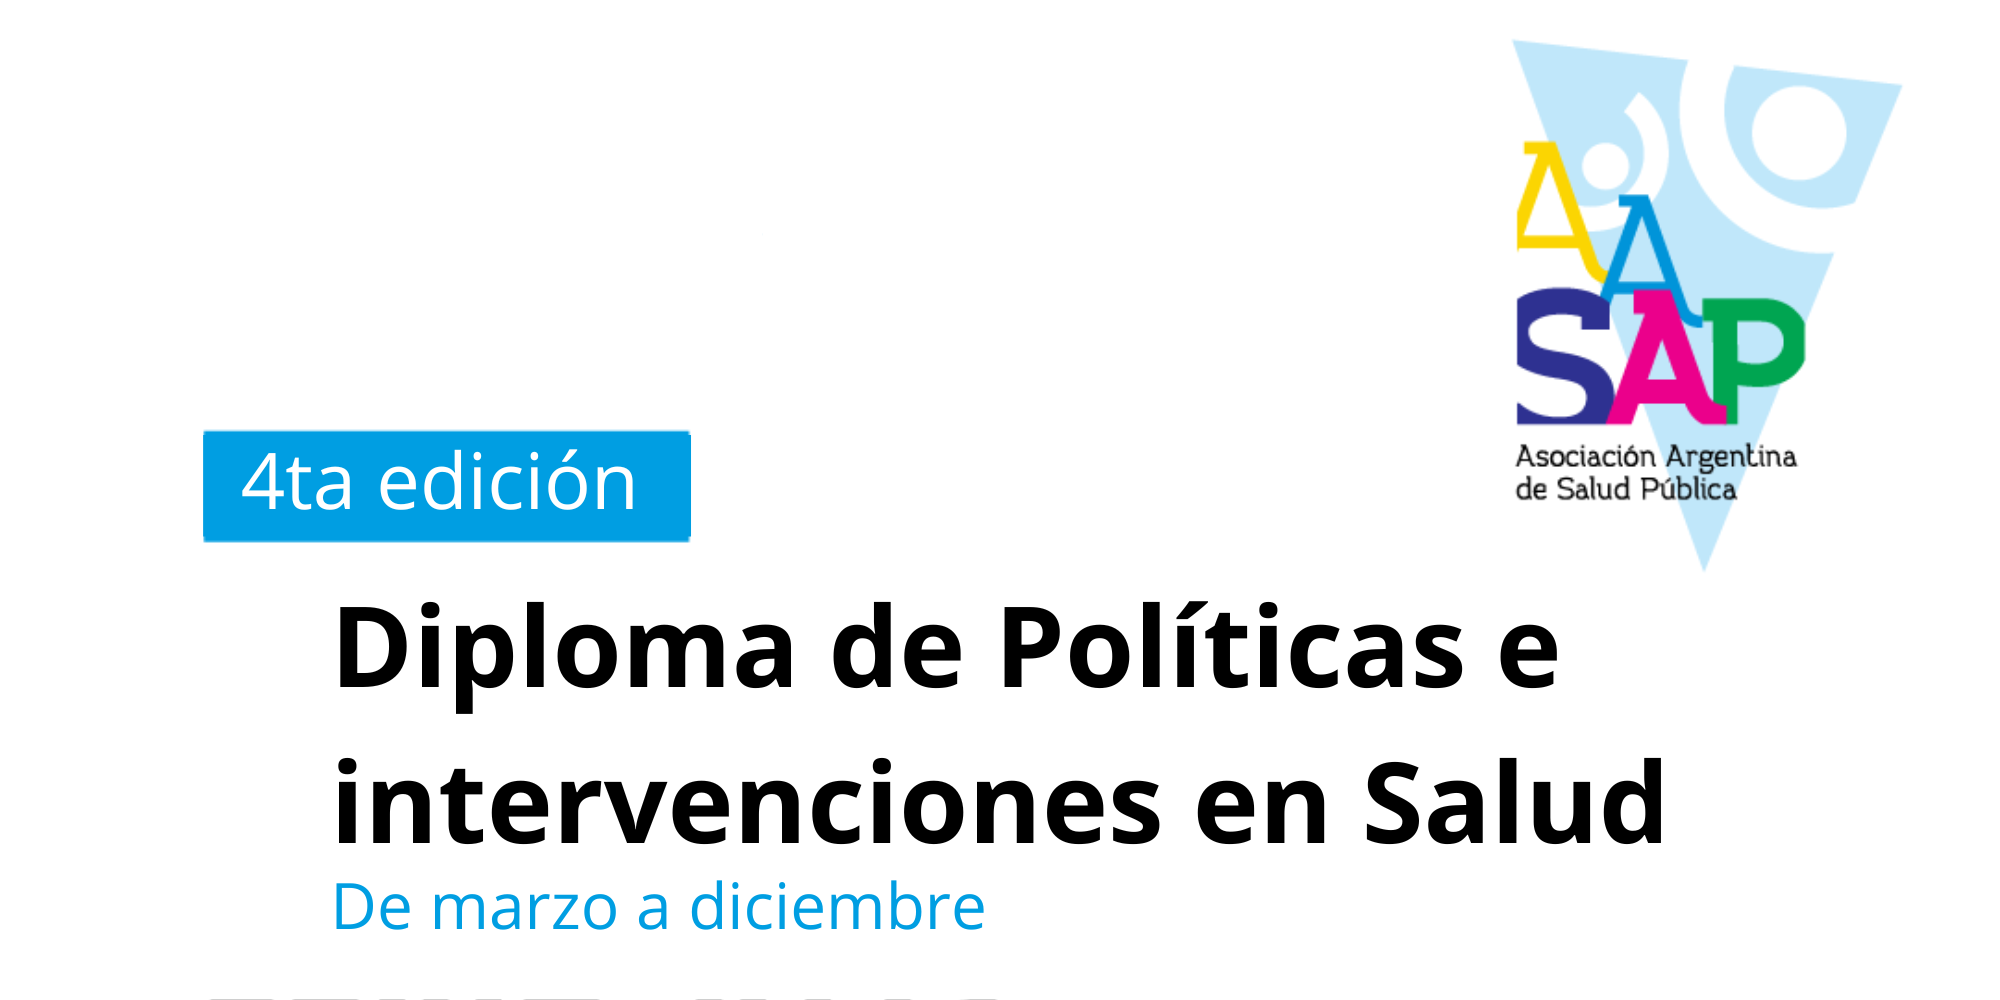 4ta edición de la Diplomatura de políticas e intervenciones en salud